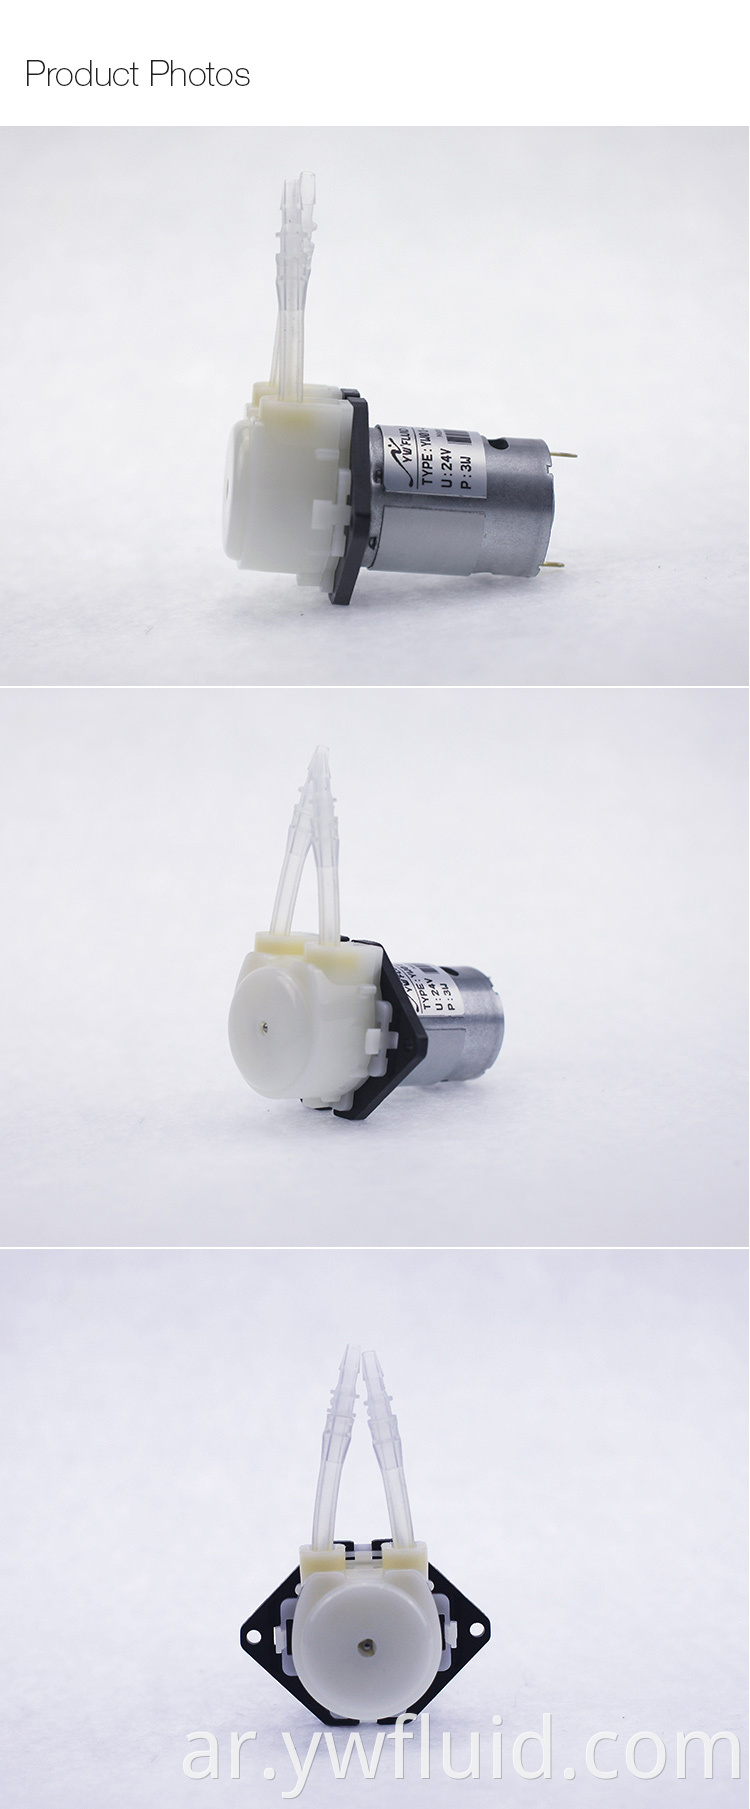 مضخة الجرعات التمعجية الدقيقة ذات الضغط العالي المصنوعة في الصين